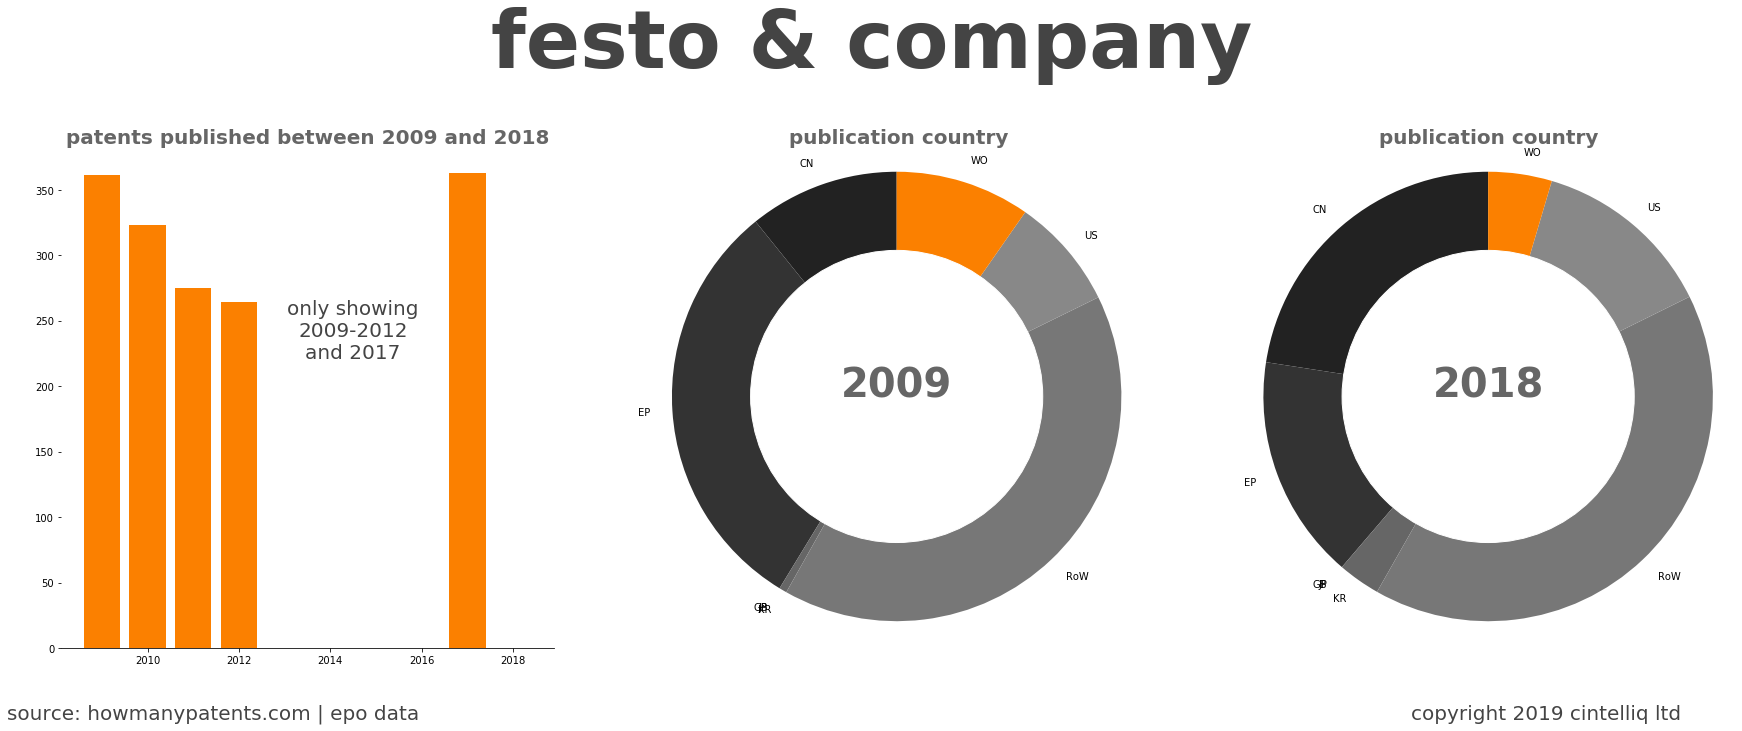 summary of patents for Festo & Company